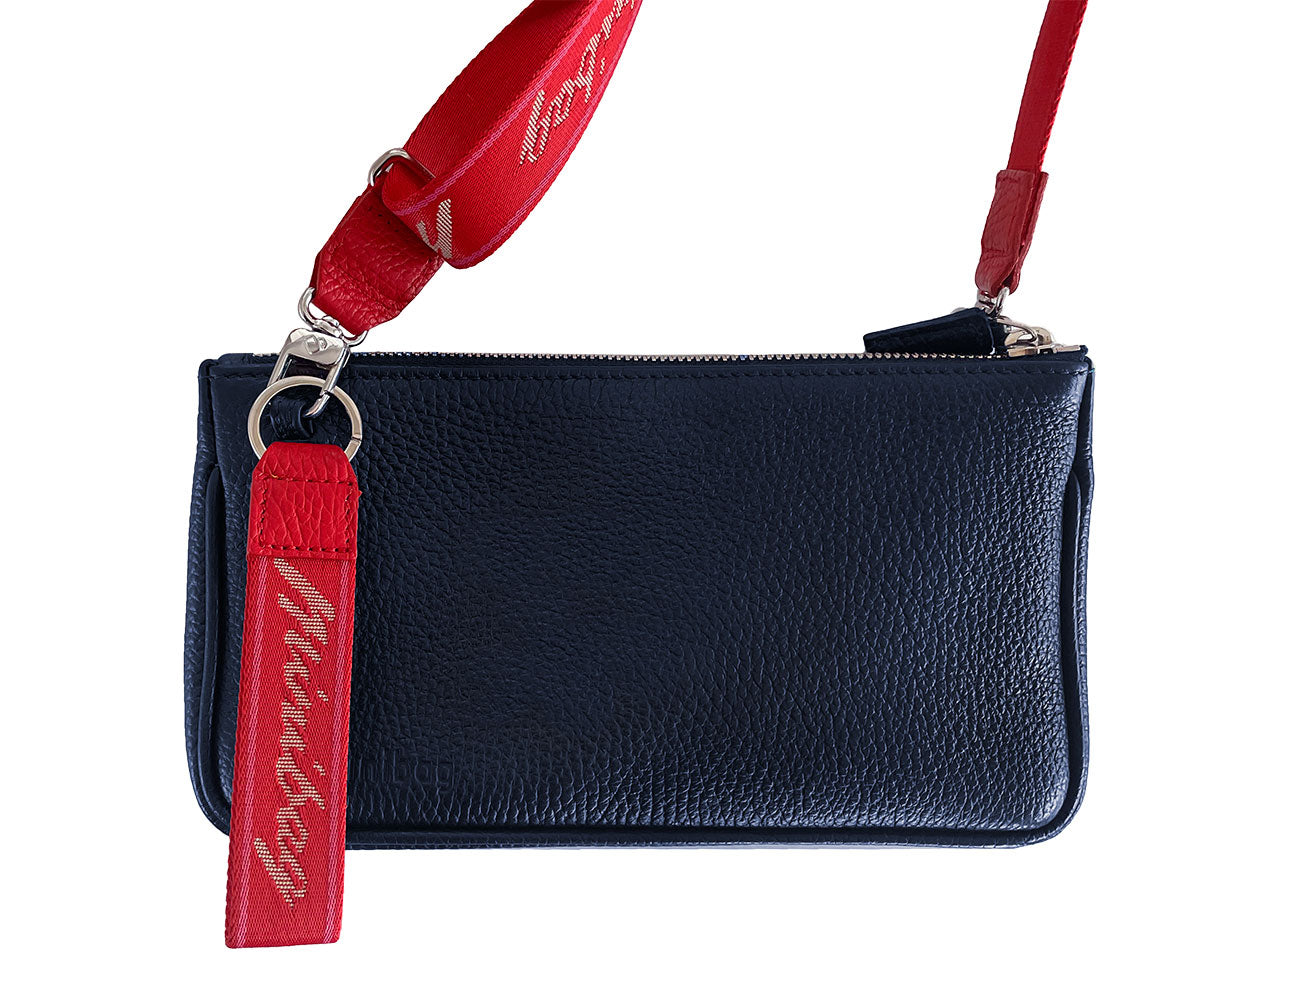 Minibag textile keyring red, minibag Schlüsselanhänger rot, minibag accessoires, minibag keyring red